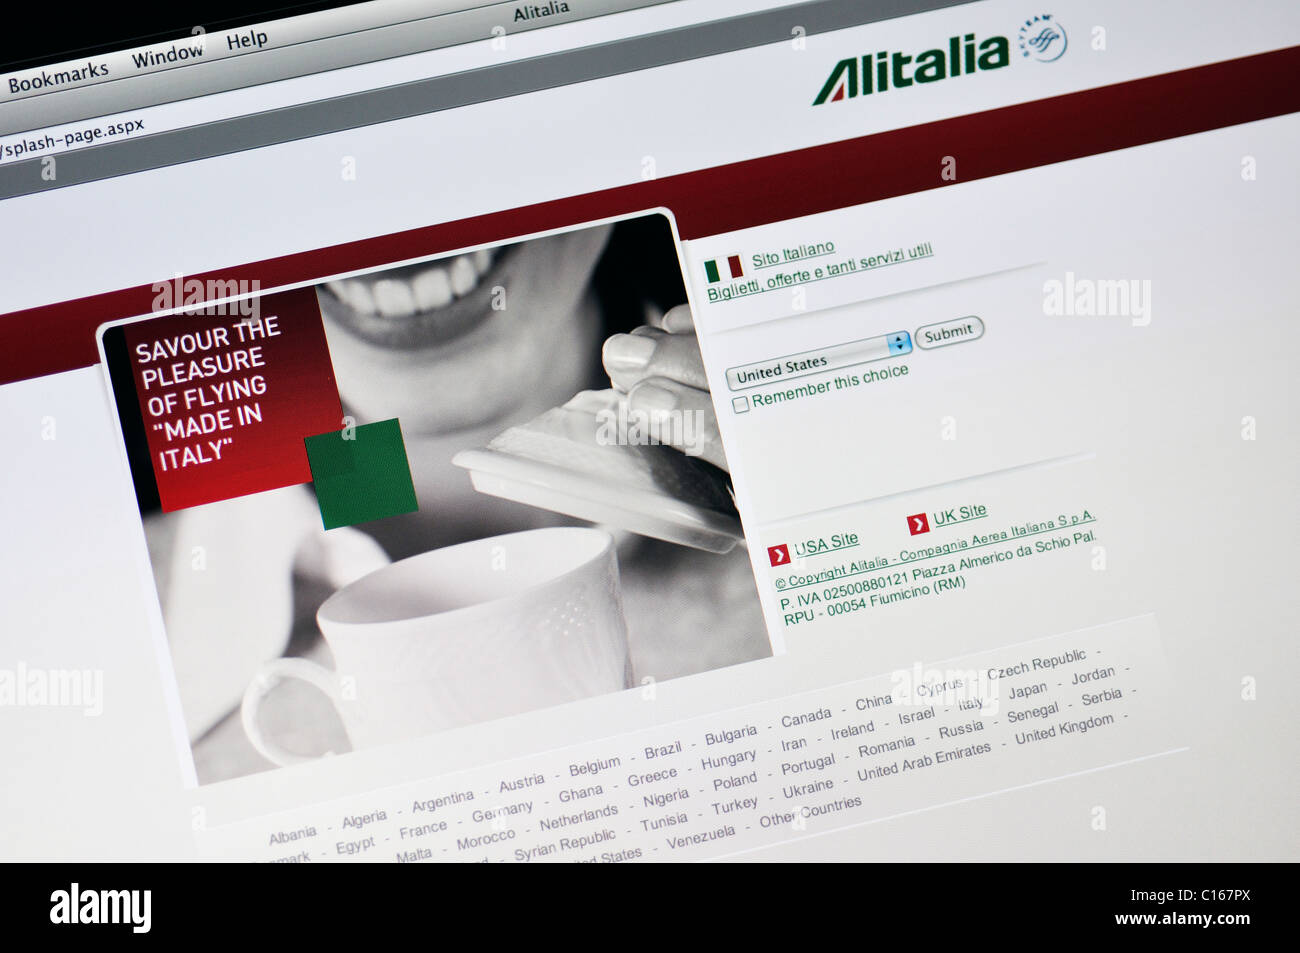 Compagnie aeree AlItalia sito web Foto Stock